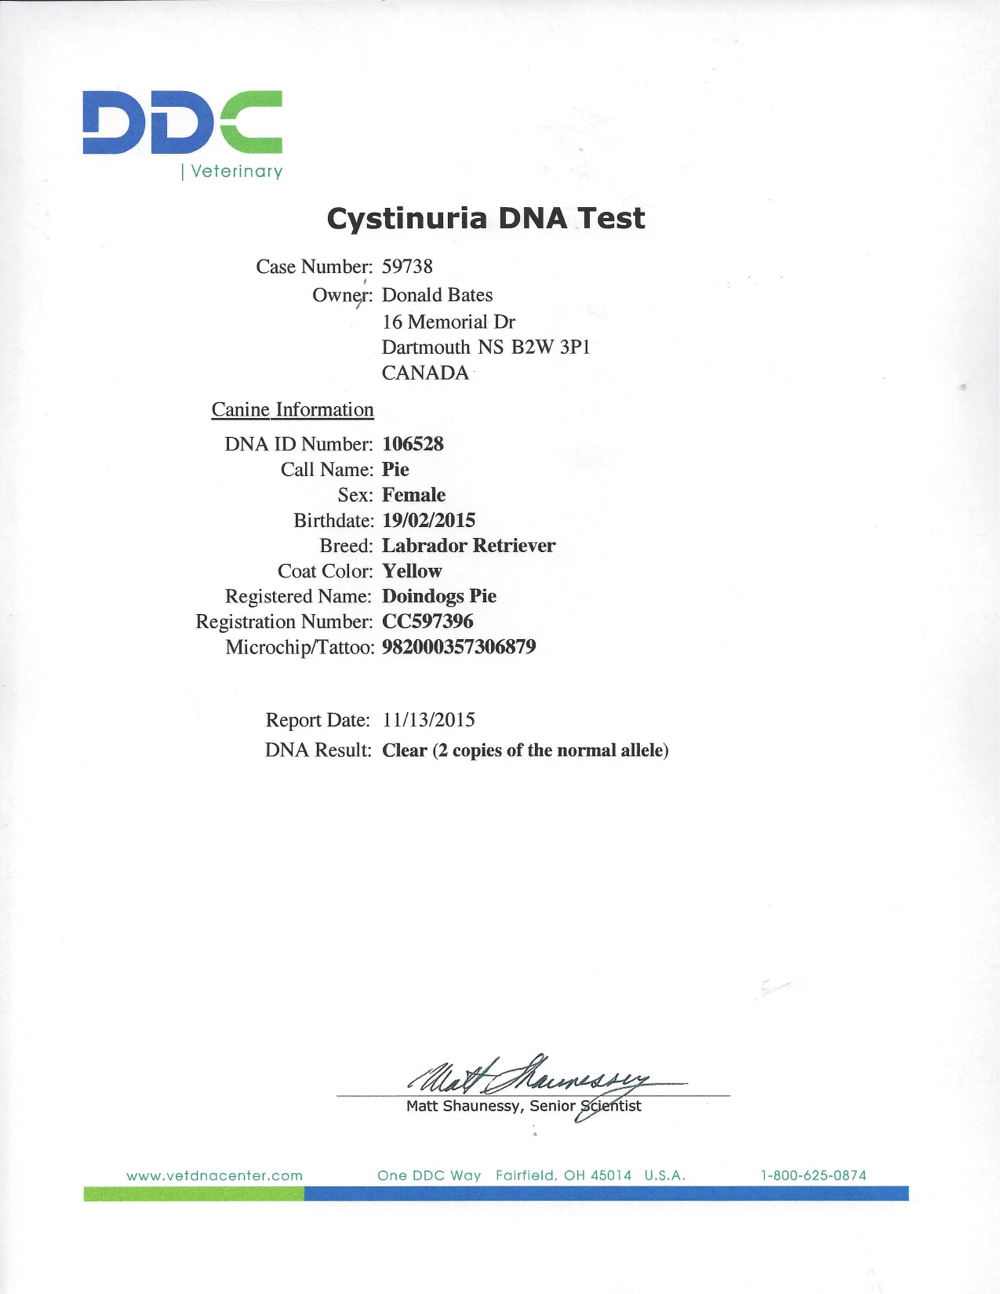 CYSTINURIA DNA CLEAR